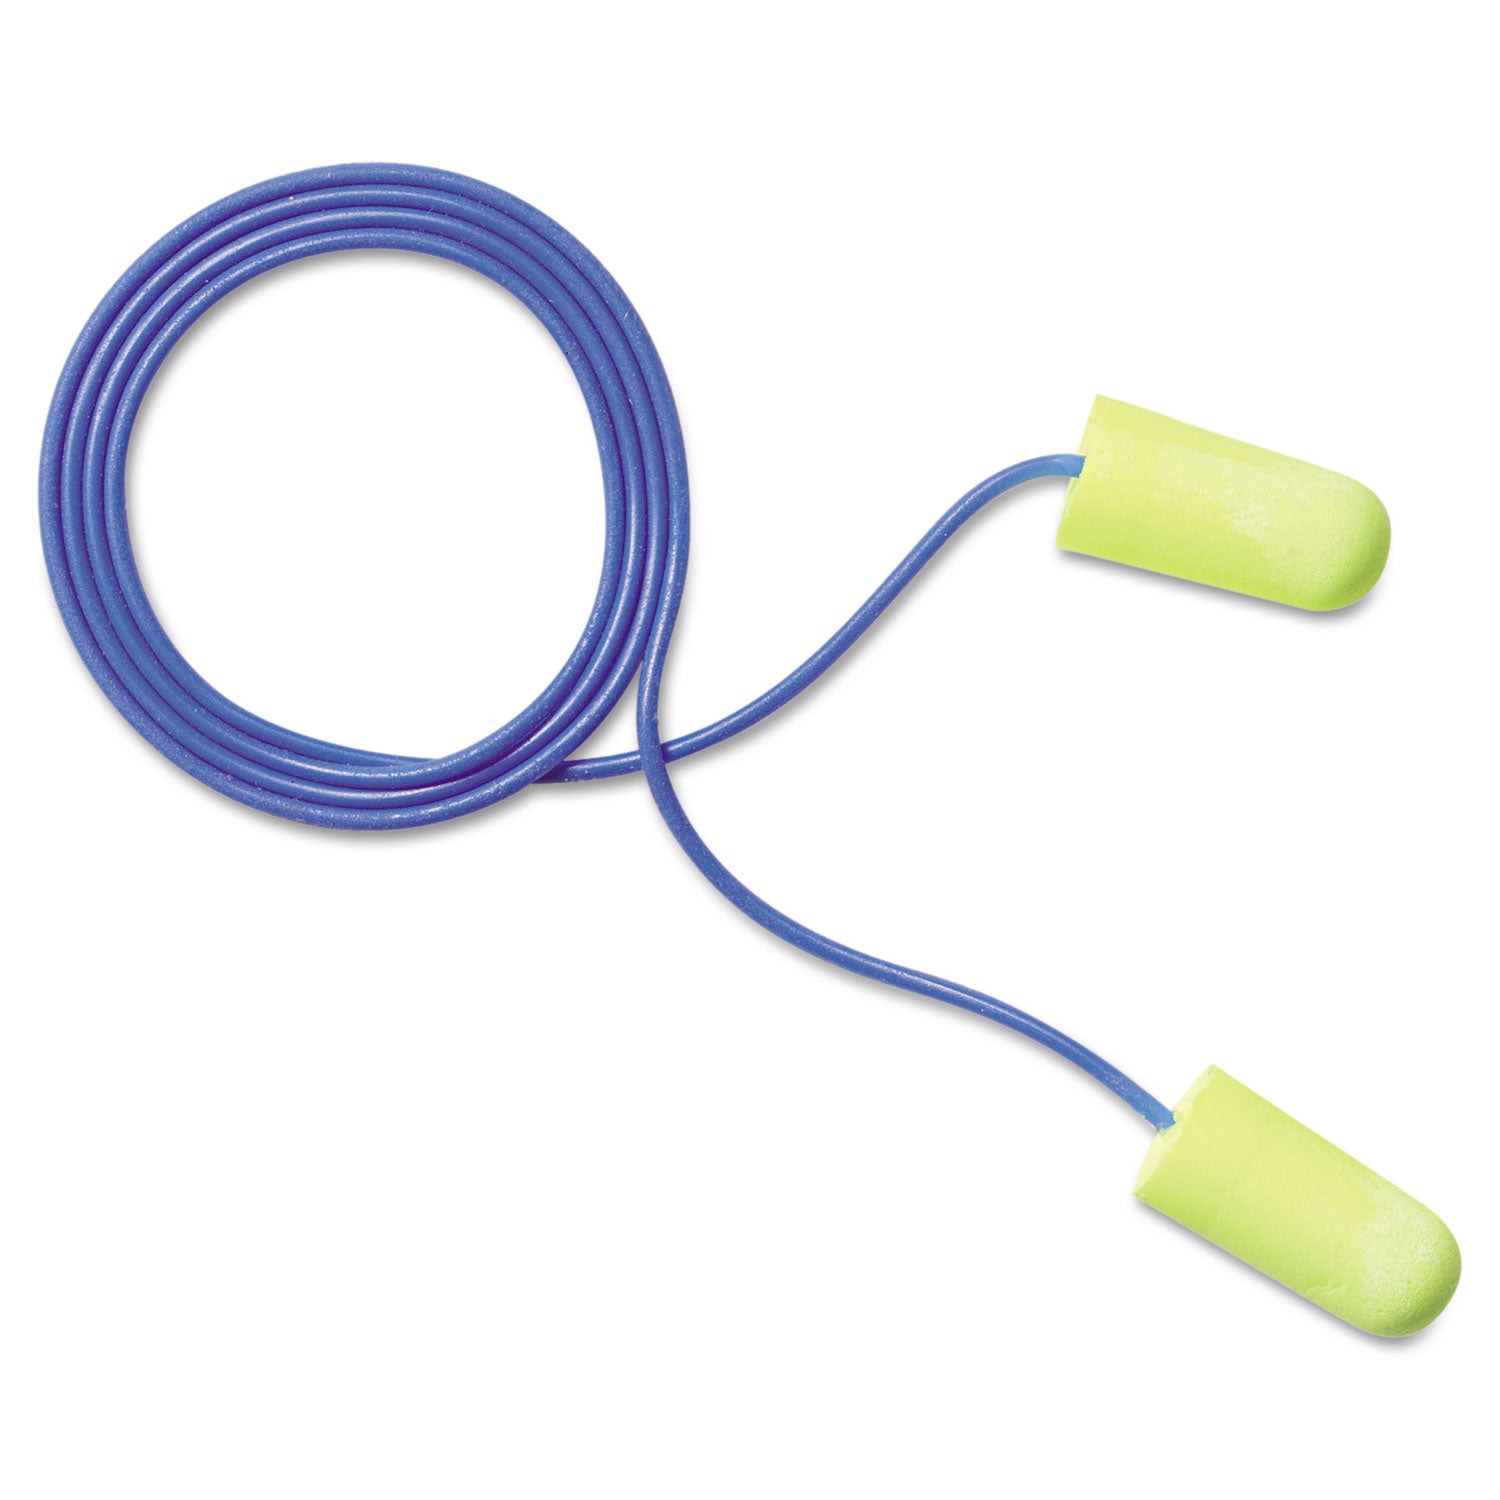 E-A-Rsoft Yellow Neon Soft Foam Earplugs, Corded, Regular Size, 200 Pairs/Box - 